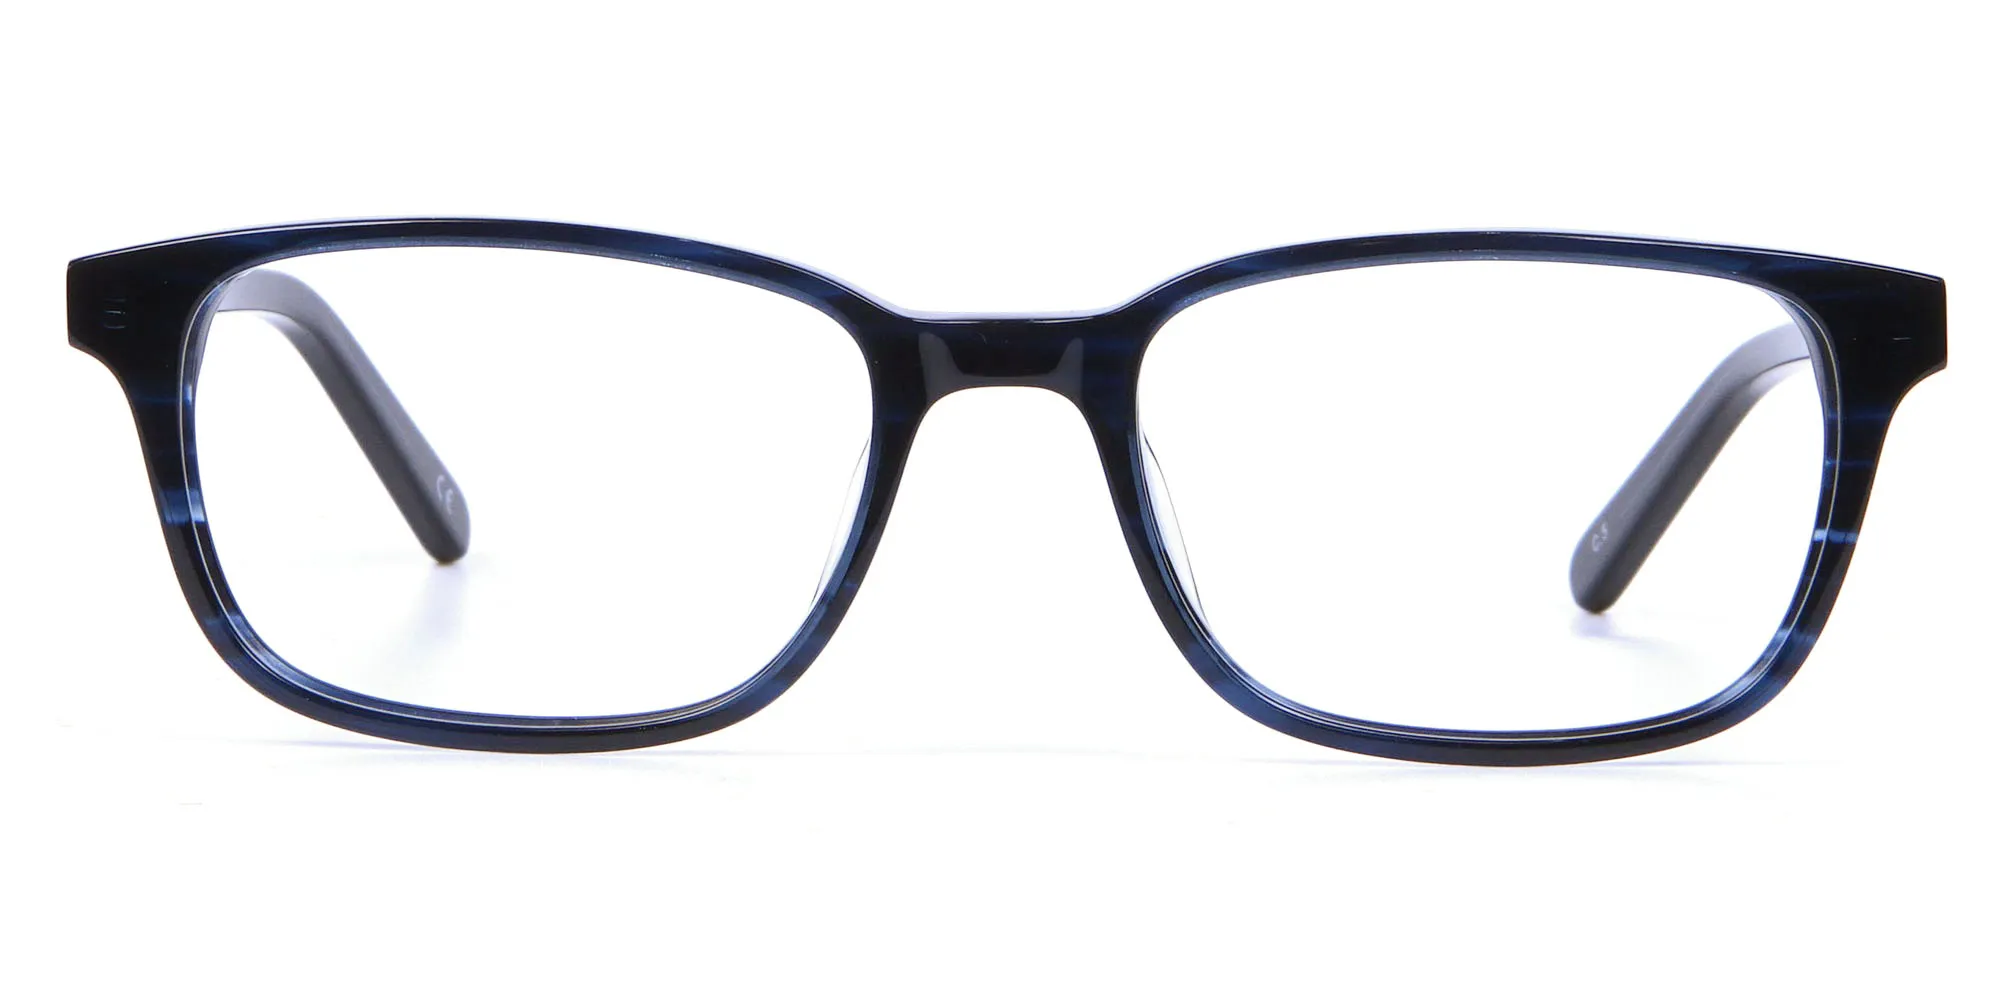 Designer Blue Rectangular Glasses - 1